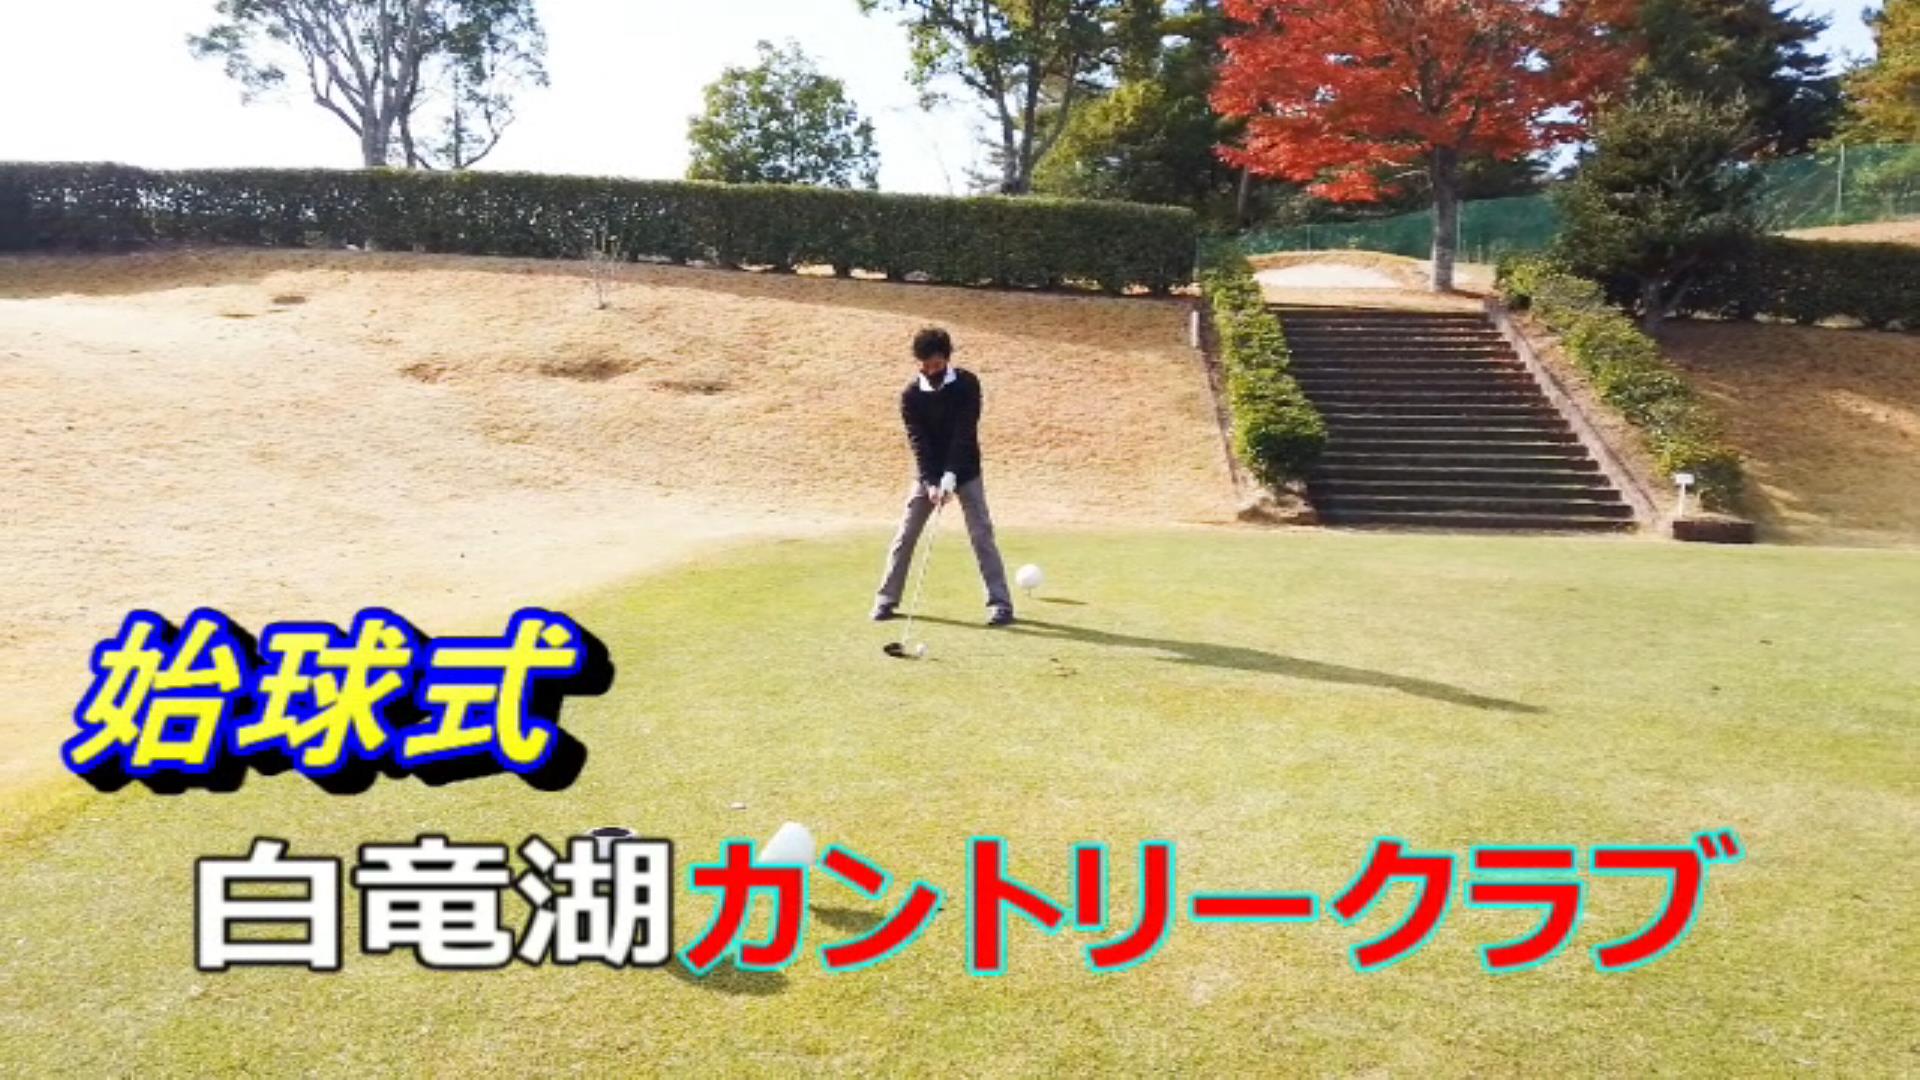 第6回東広島支部親睦ゴルフコンペのイメージ